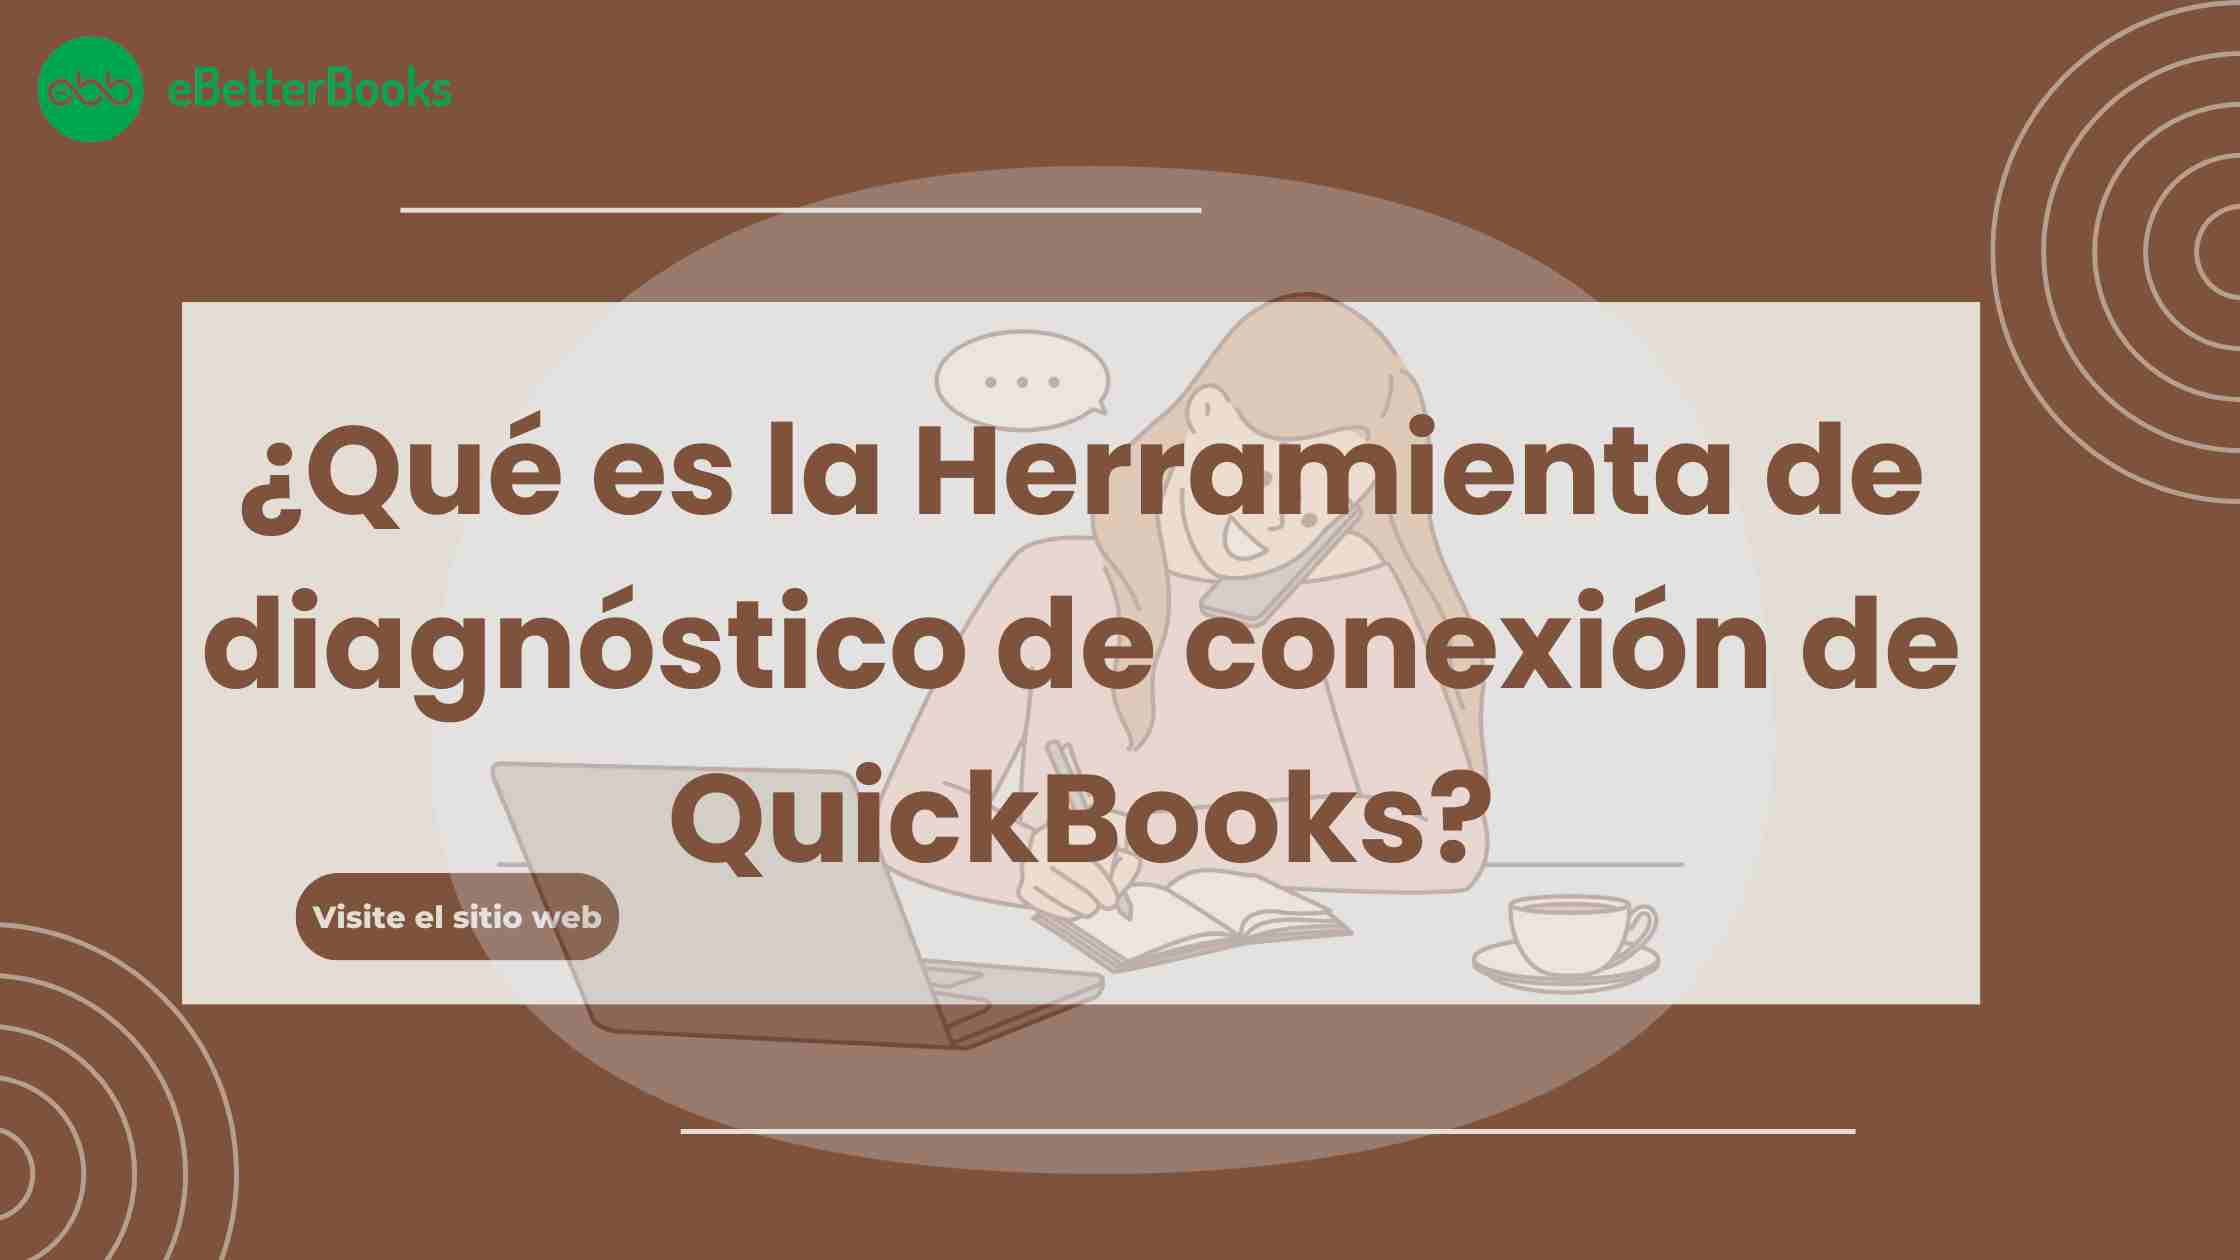 ¿Qué es la Herramienta de diagnóstico de conexión de QuickBooks?